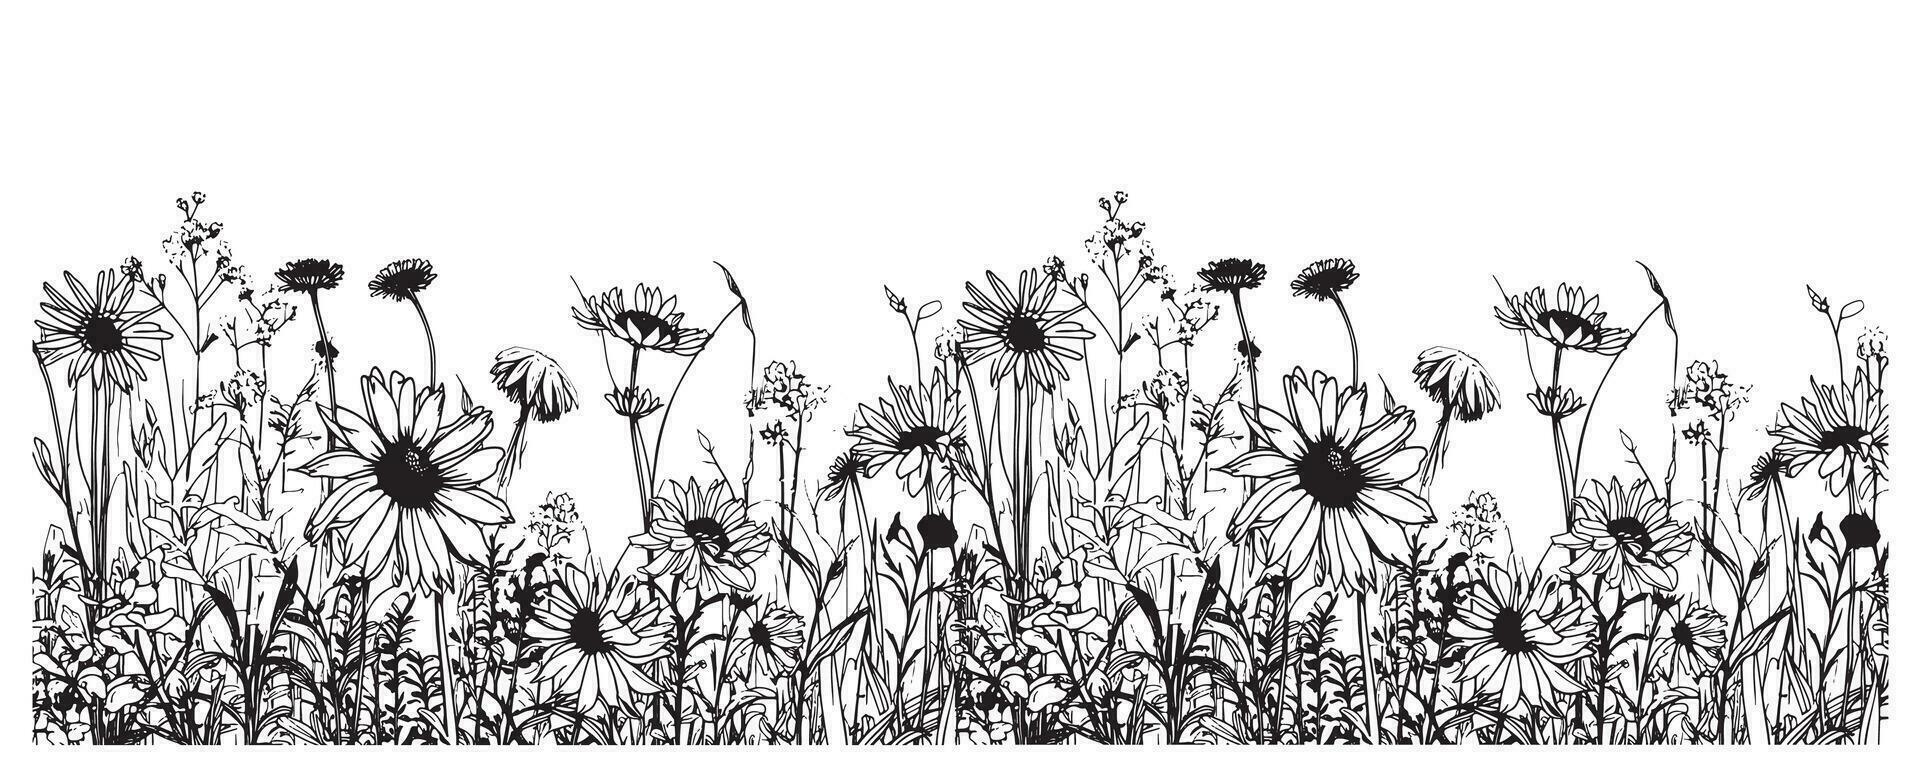 Wildblumen Rand skizzieren Hand gezeichnet im Gekritzel Stil Vektor Illustration